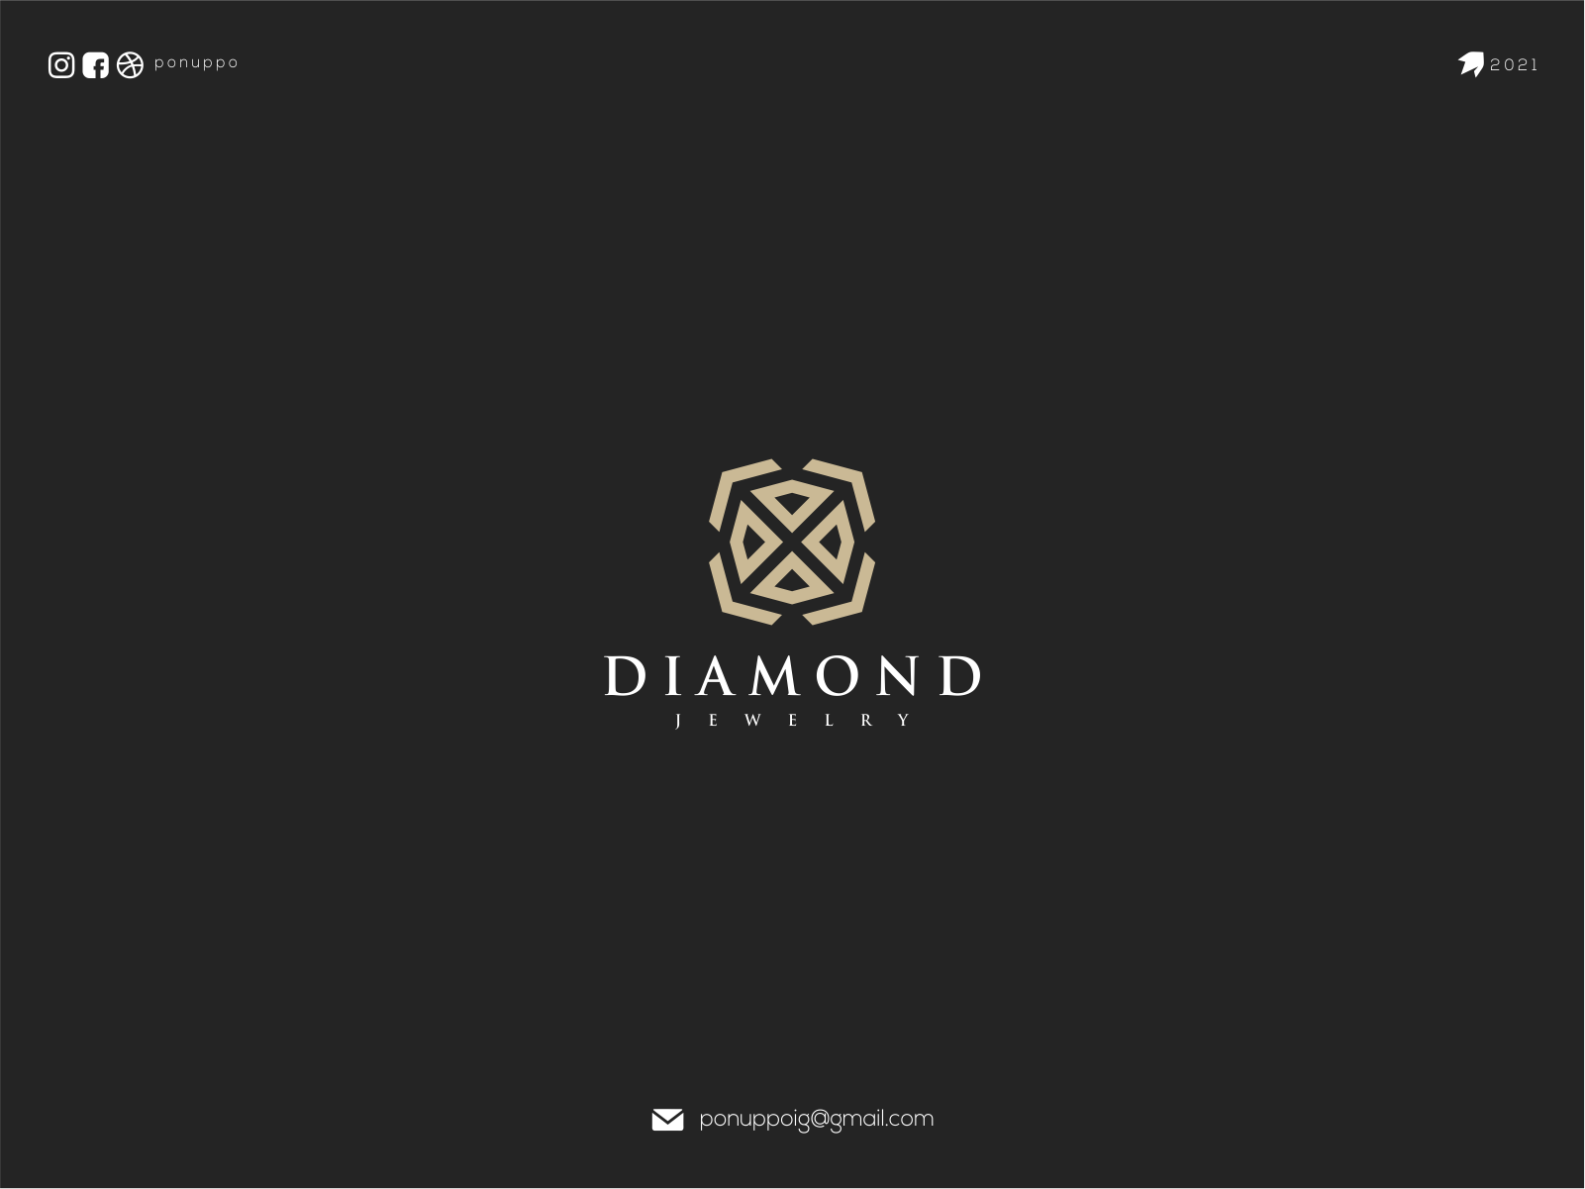 Diamond Jewelry by ponuppo on Dribbble